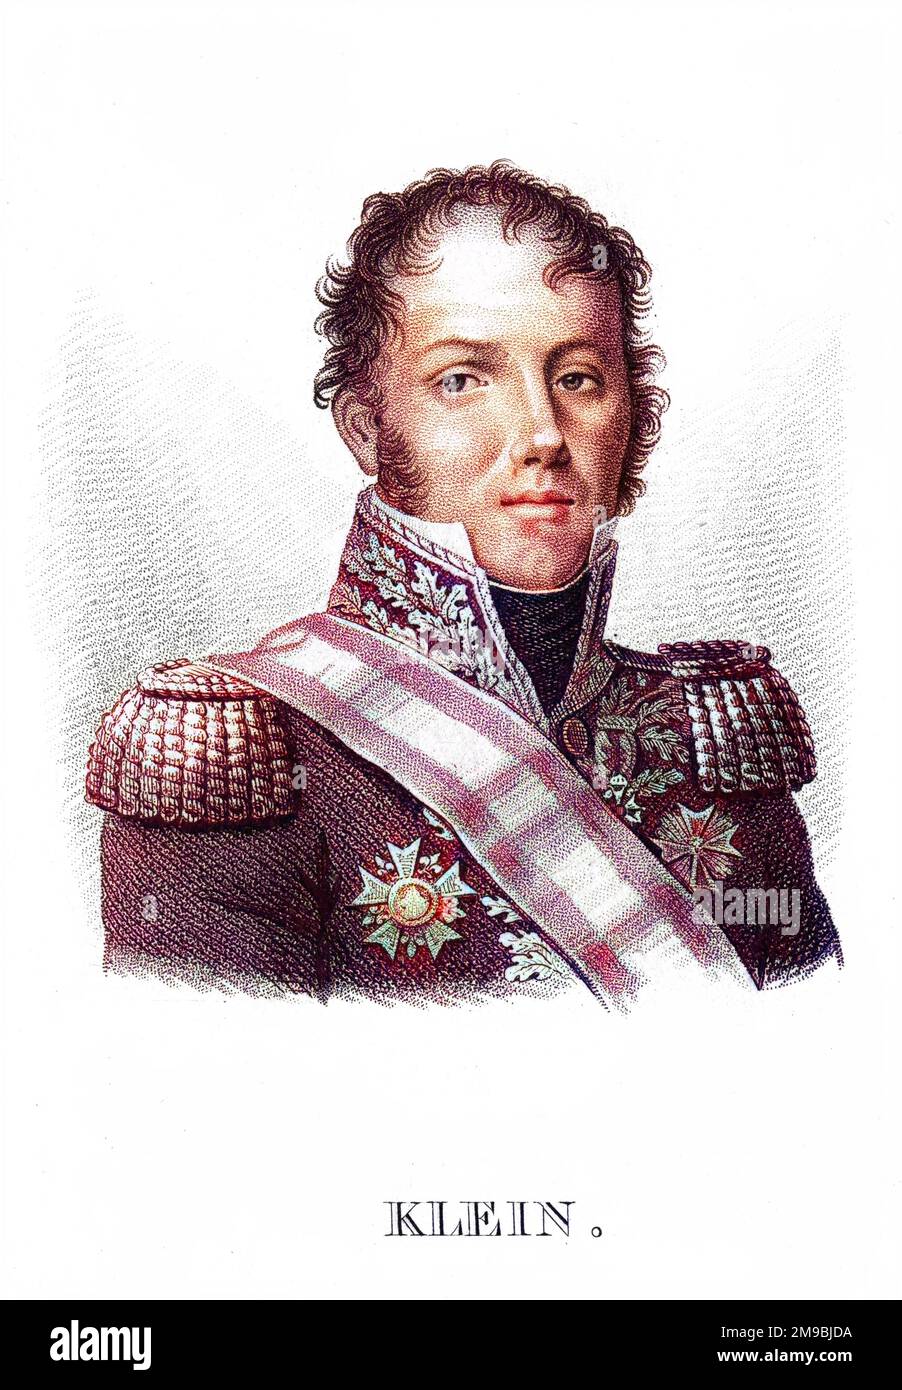 DOMINIQUE LOUIS ANTOINE. comte KLEIN, commandant militaire et homme d'État français Banque D'Images